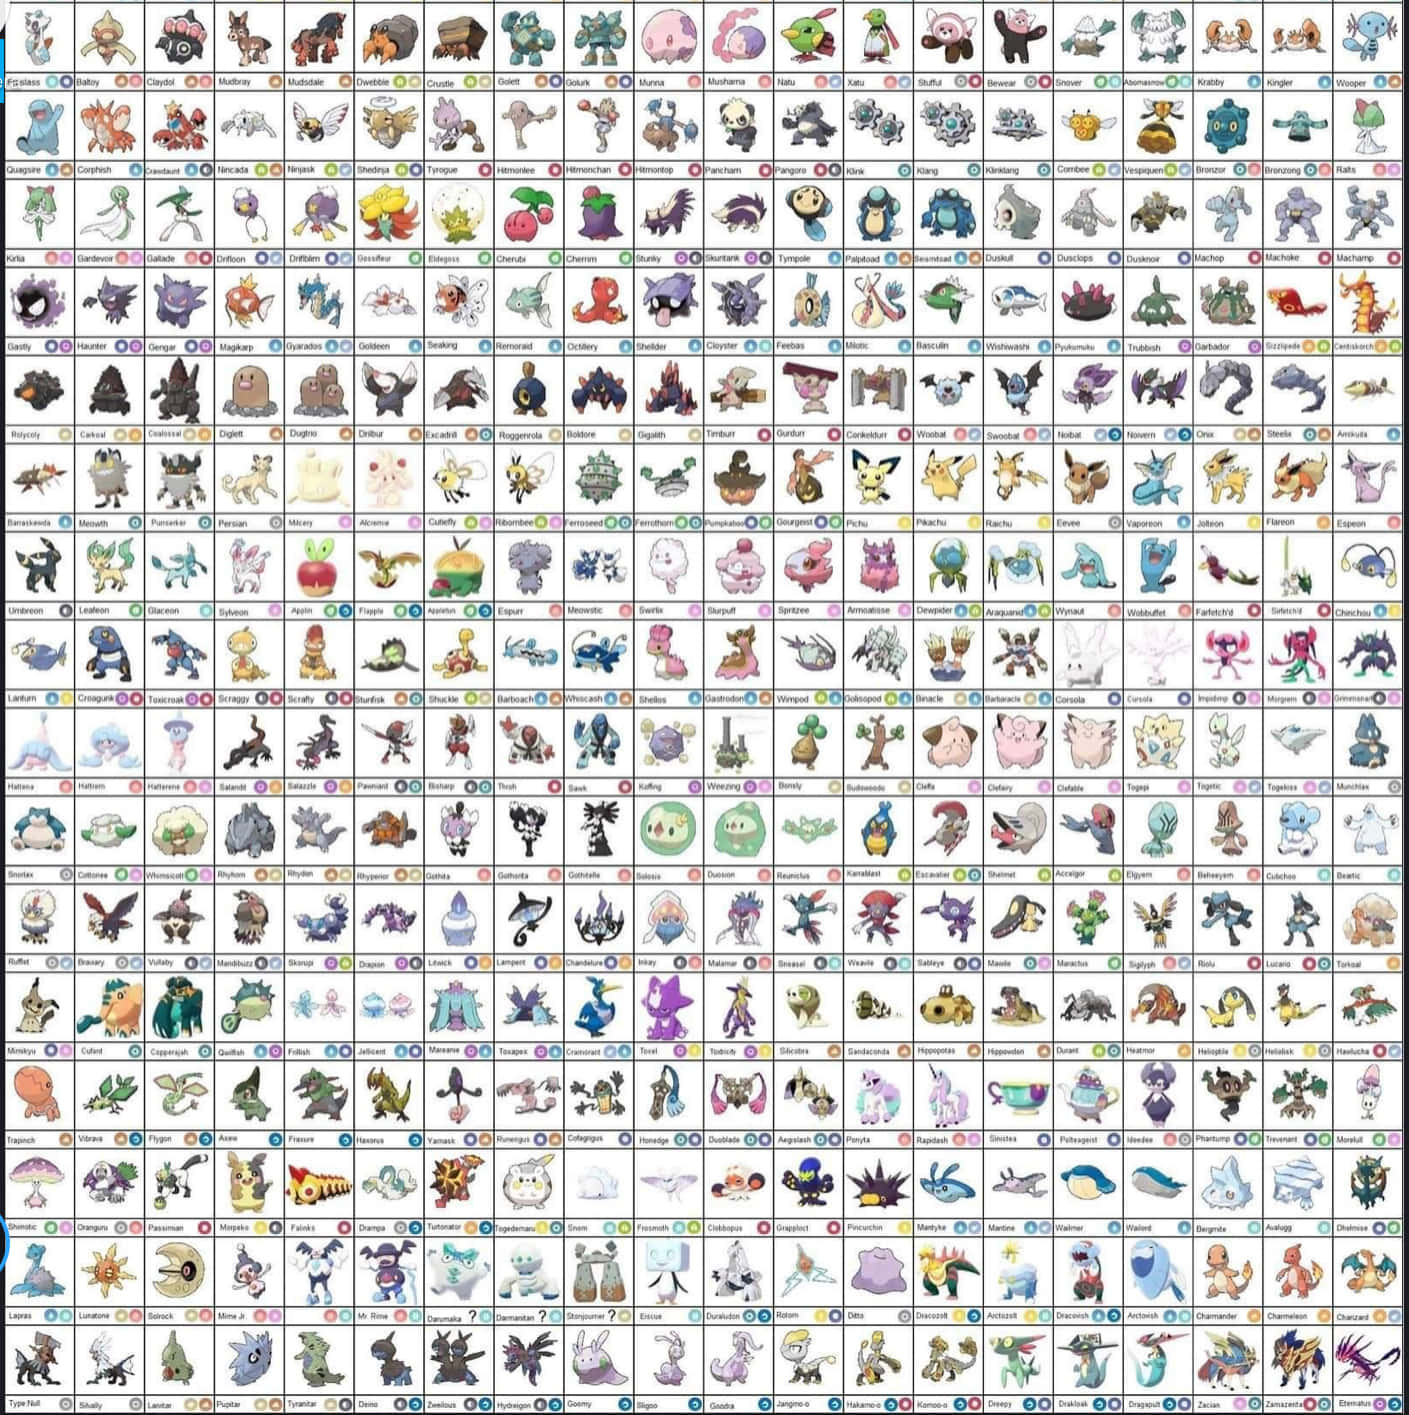 Espurren La Lista De Pokémon Fondo de pantalla